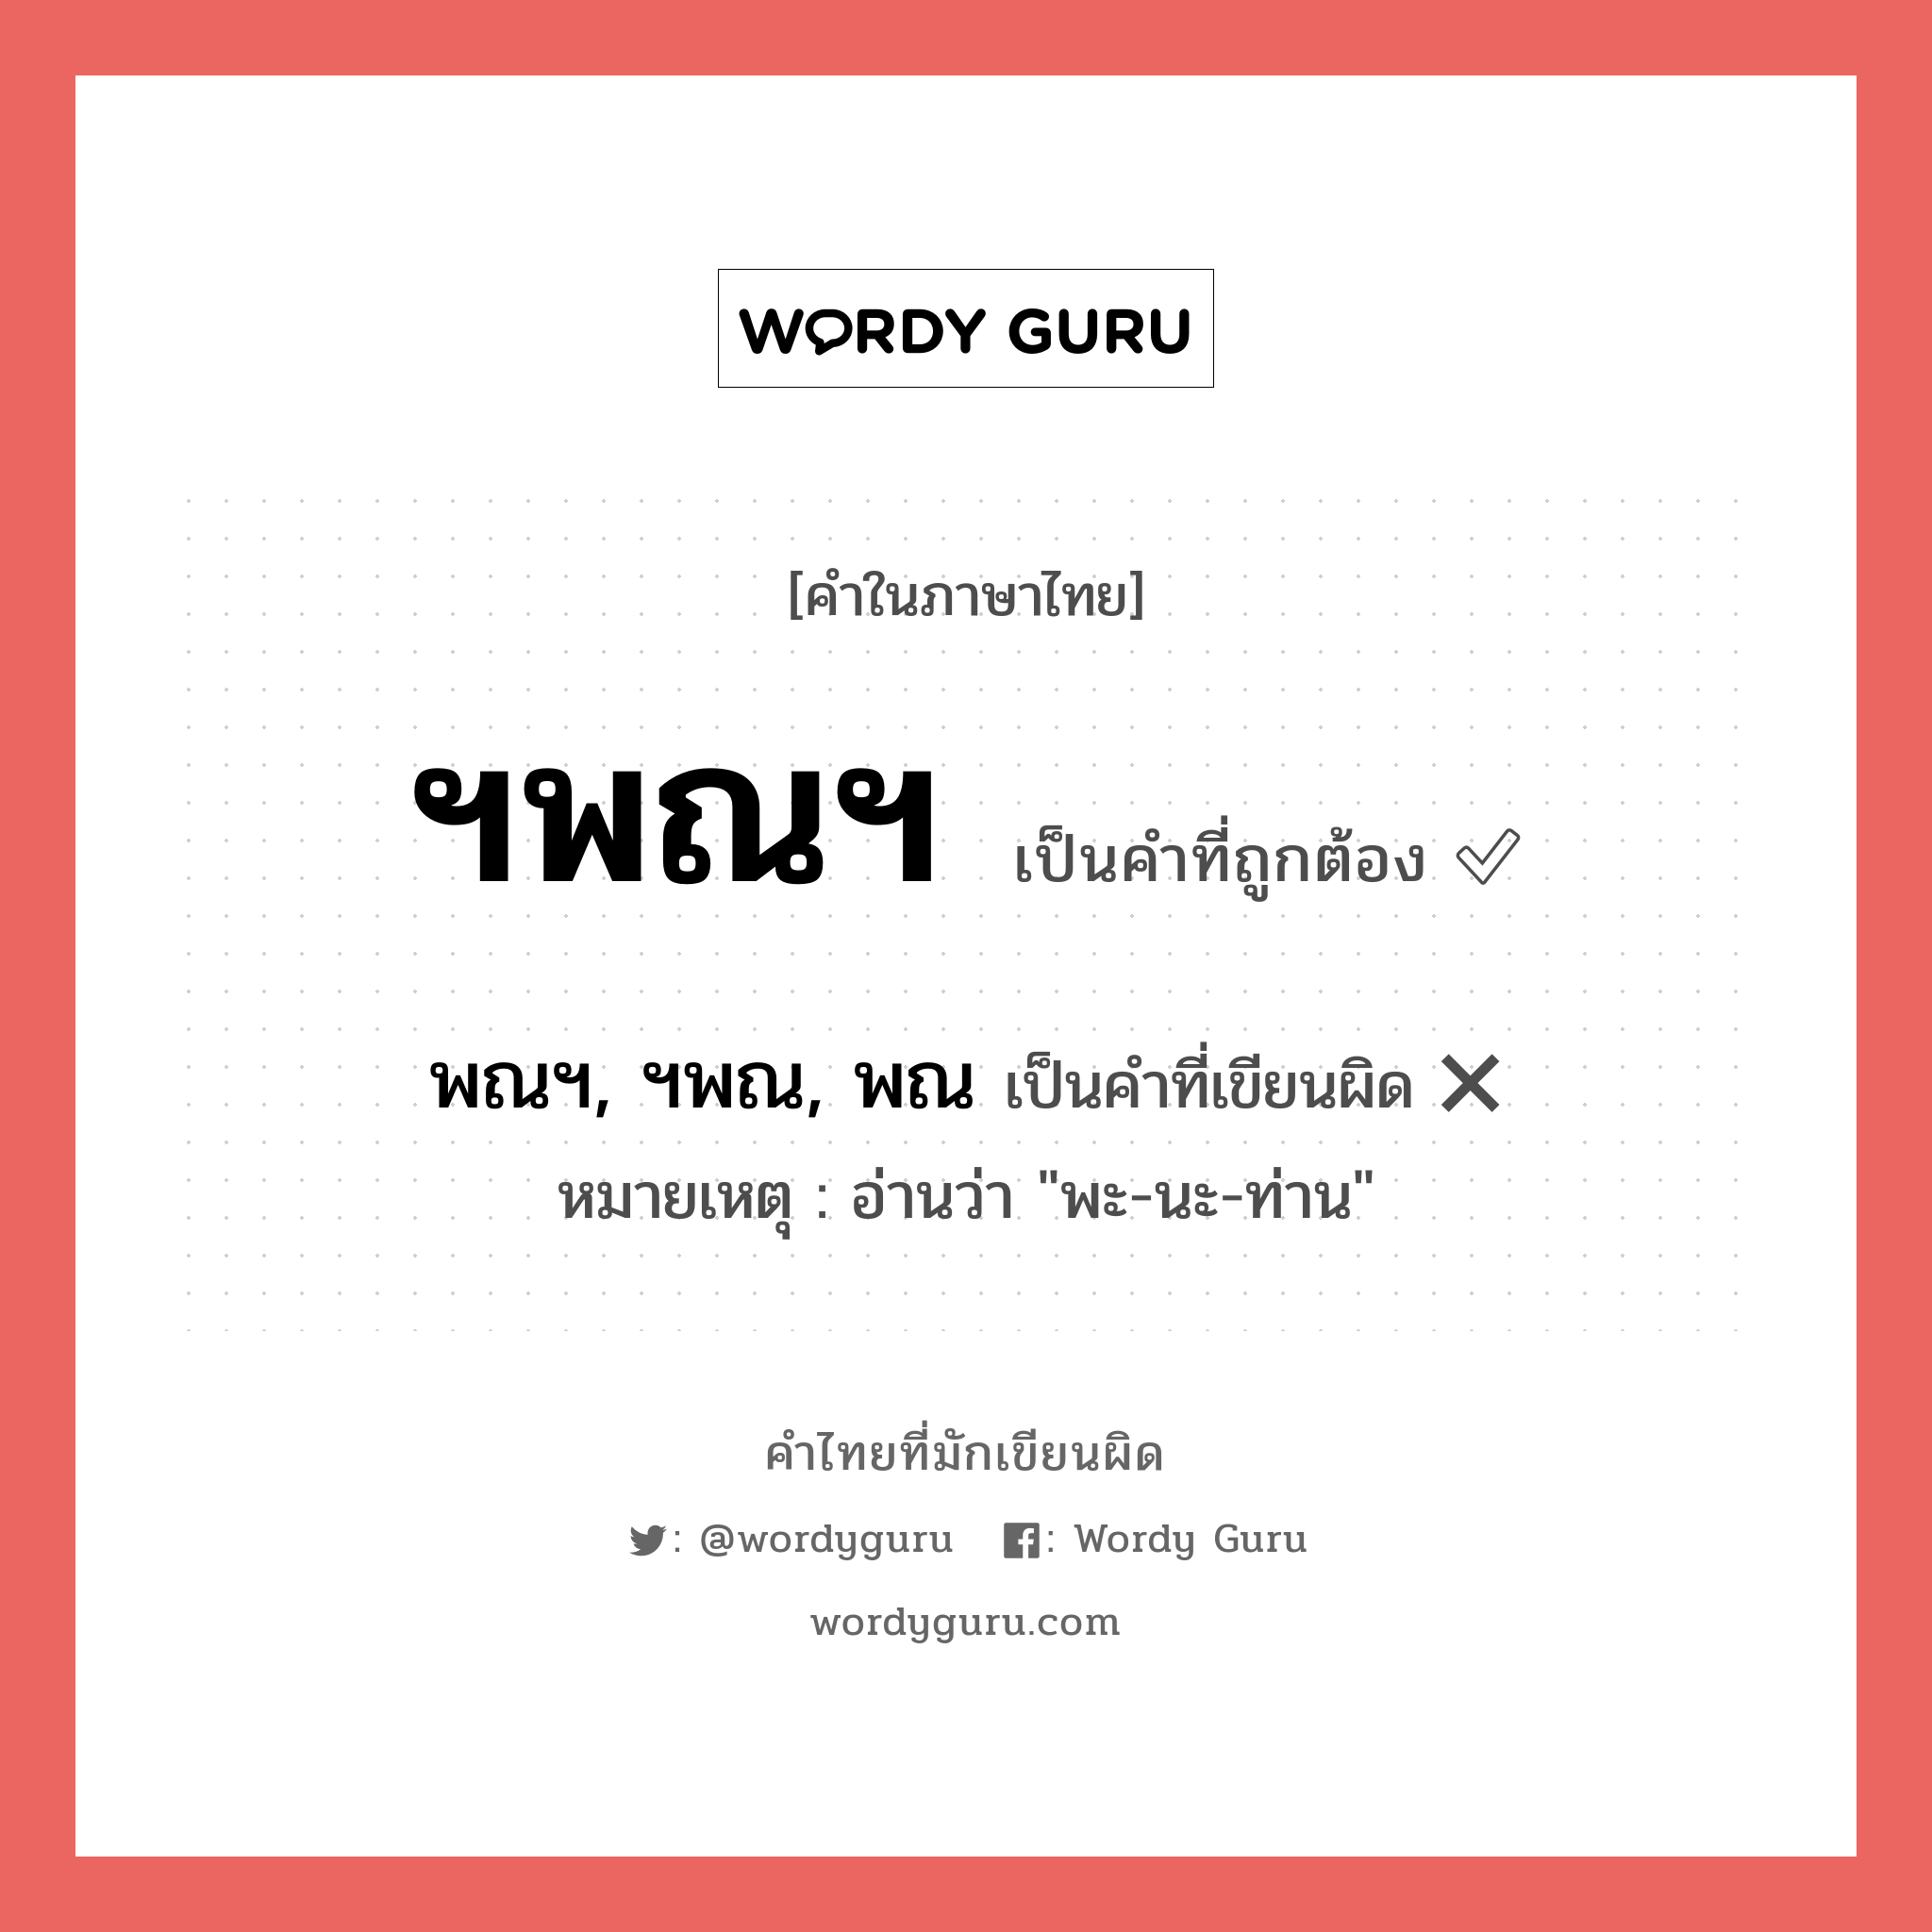 ฯพณฯ หรือ พณฯ, ฯพณ, พณ คำไหนเขียนถูก?, คำในภาษาไทยที่มักเขียนผิด ฯพณฯ คำที่ผิด ❌ พณฯ, ฯพณ, พณ หมายเหตุ อ่านว่า "พะ-นะ-ท่าน"